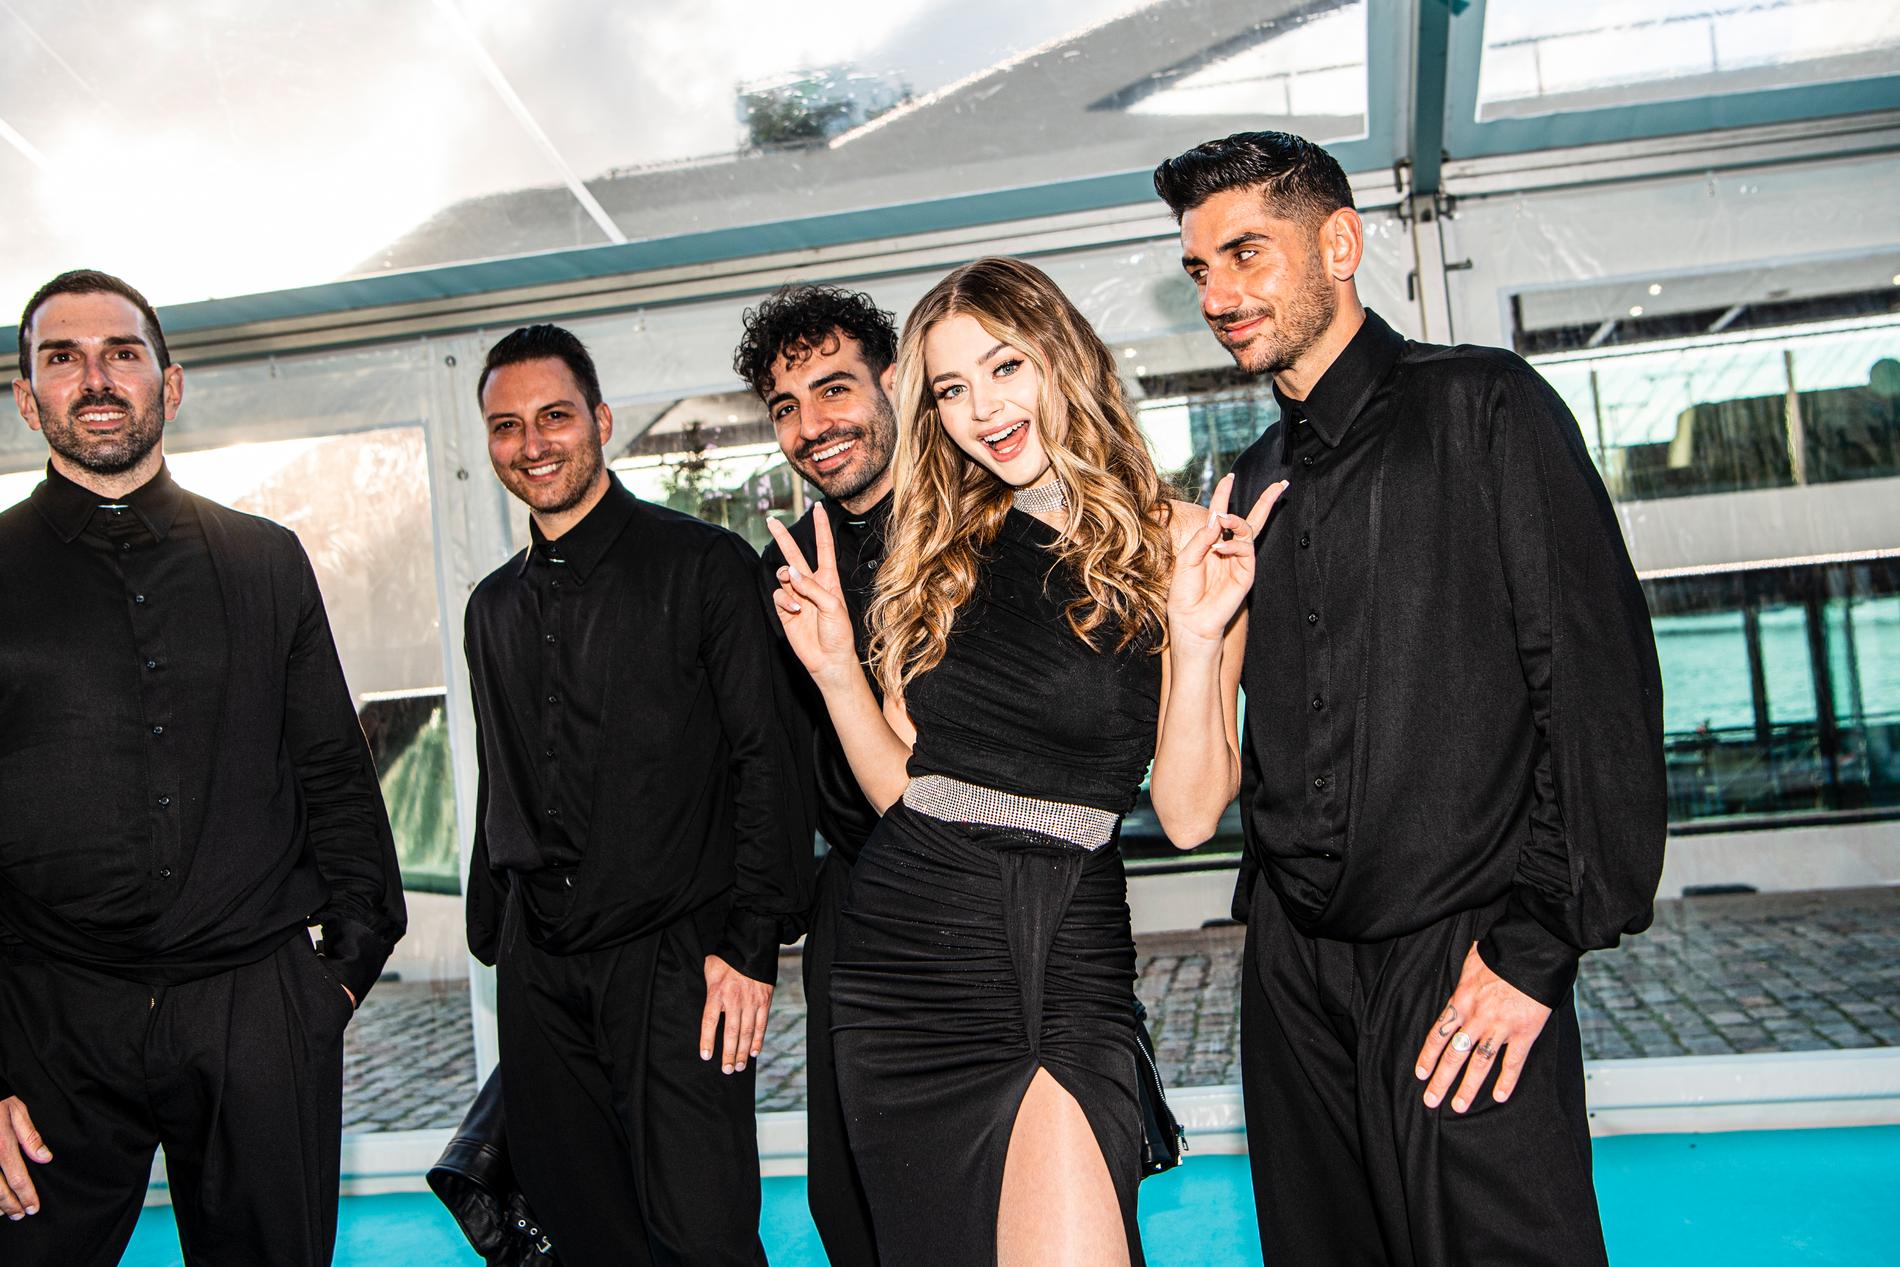 Stefania tävlar för Grekland i Eurovision 2021 med låten ”Last dance”. Här på bild på turkosa mattan tillsammans med sina dansare.